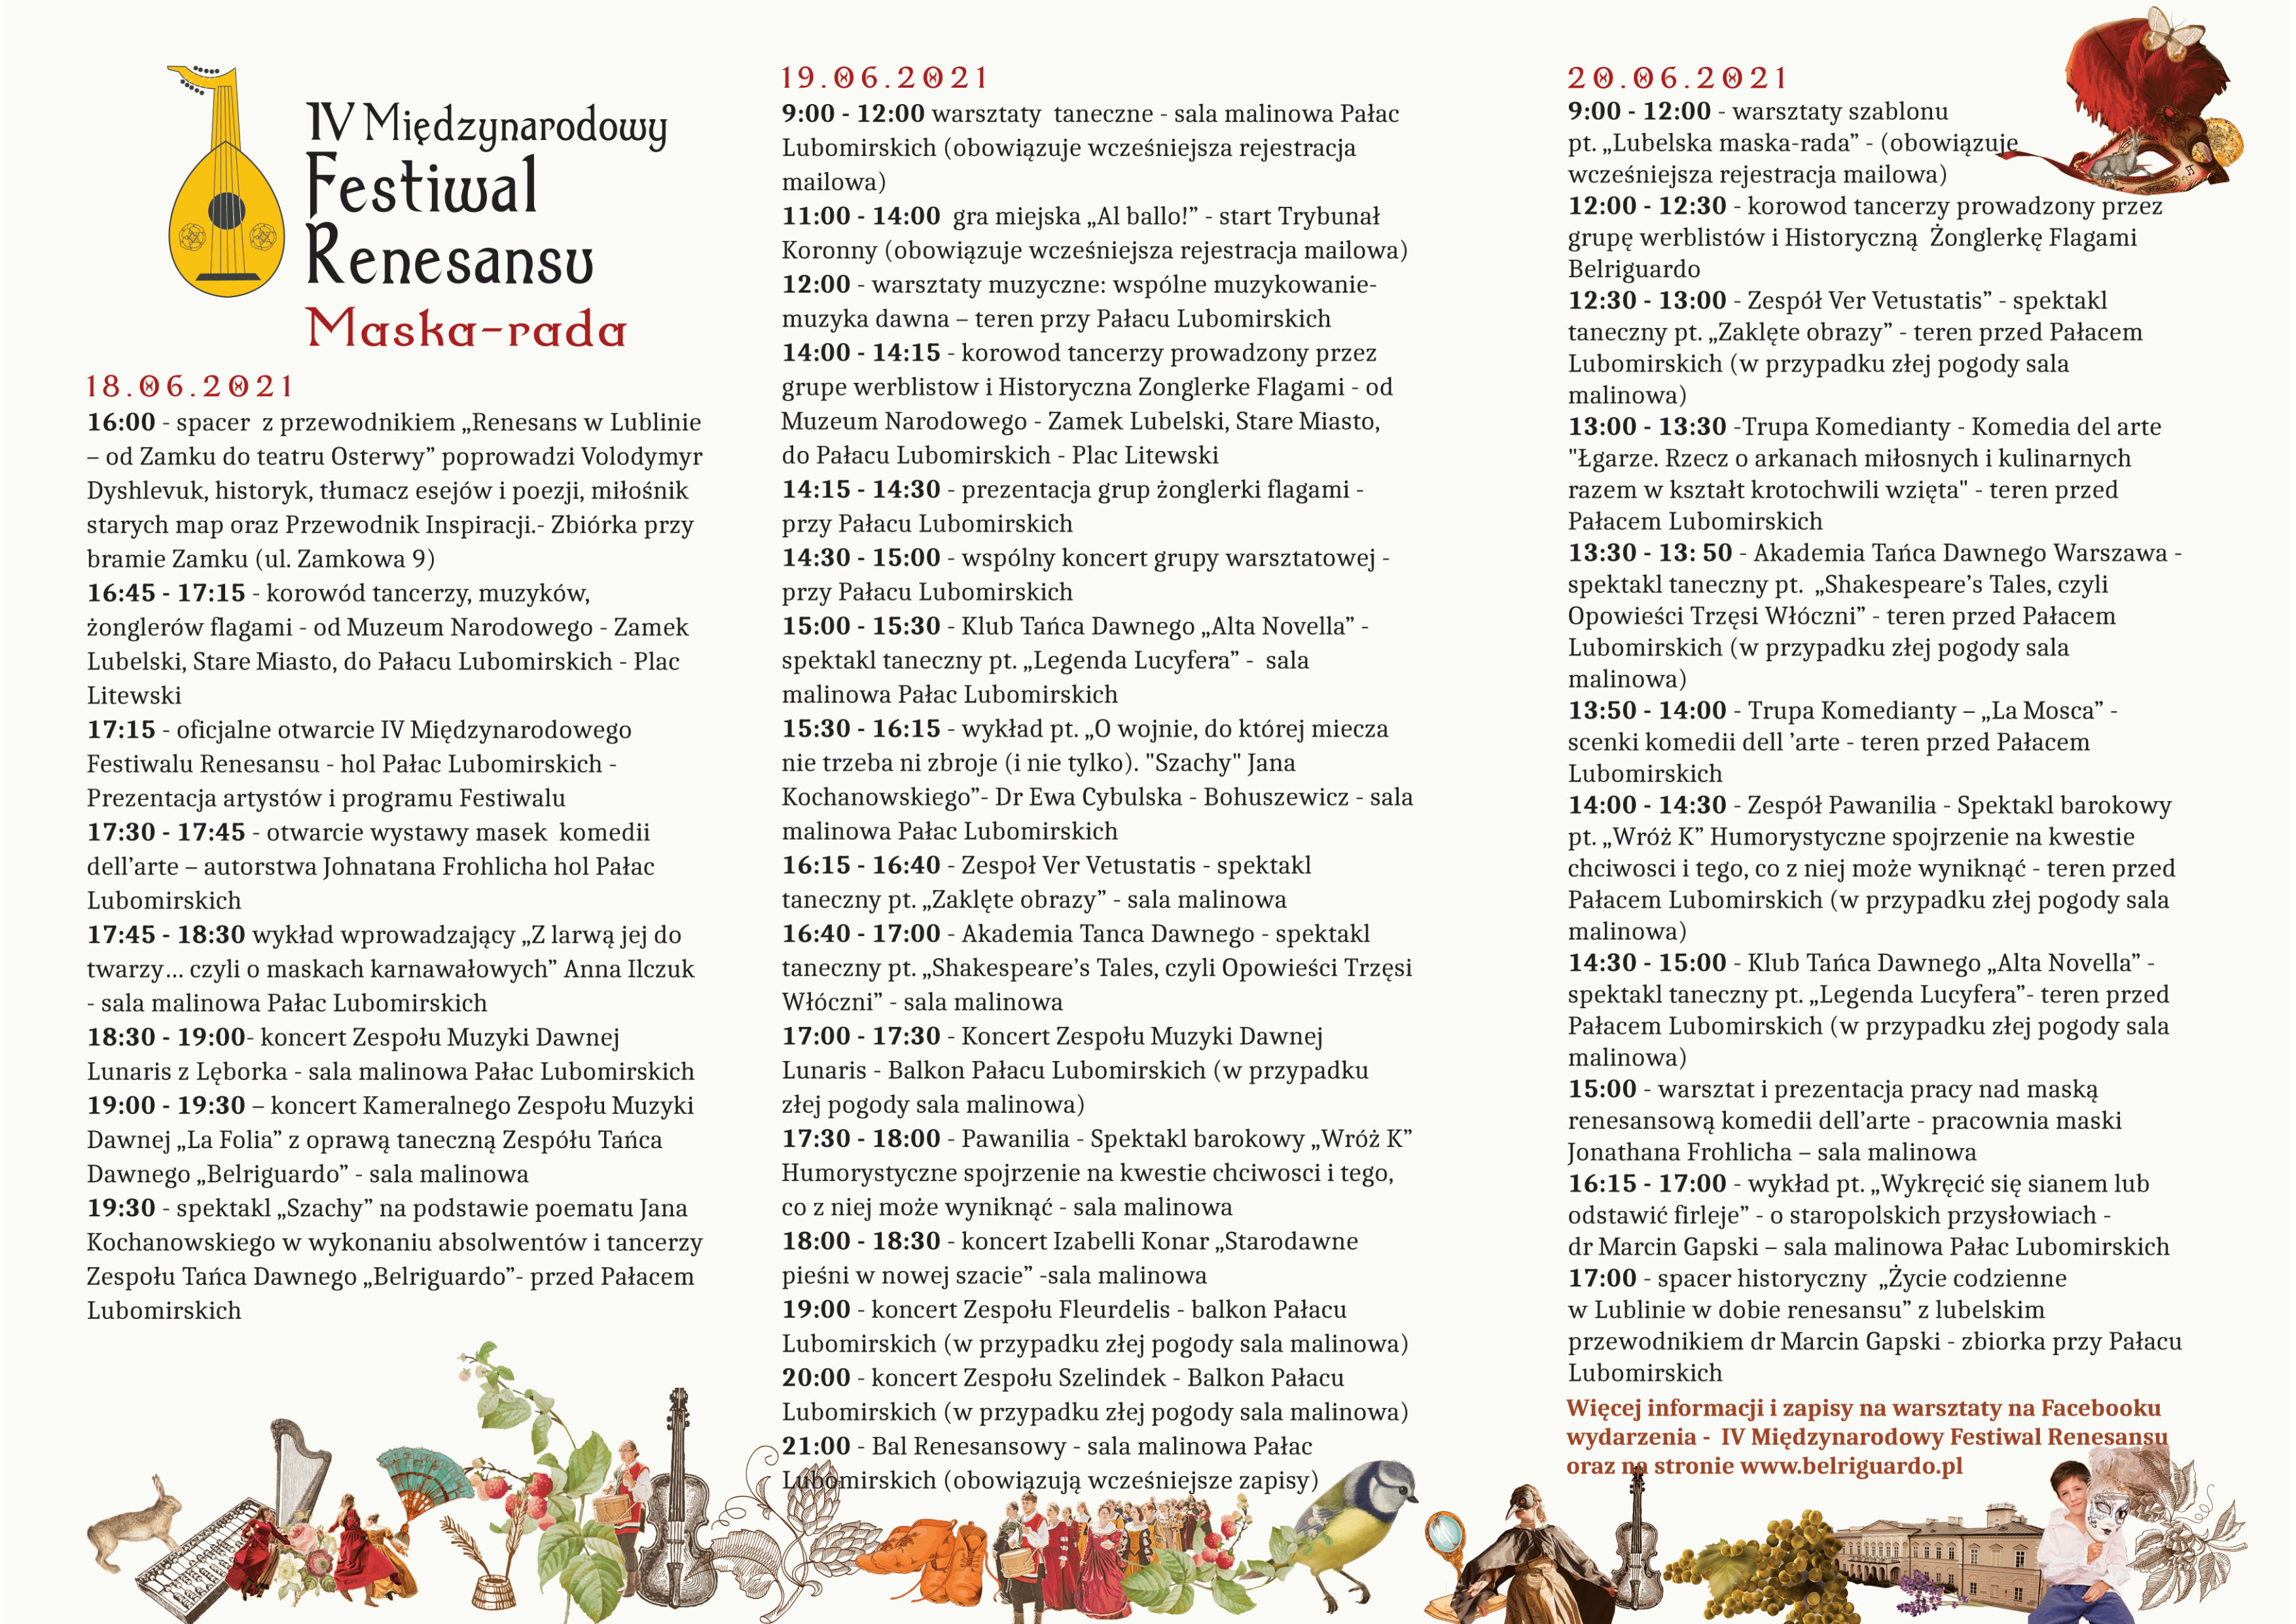 IV Międzynarodowy Festiwal Renesansu